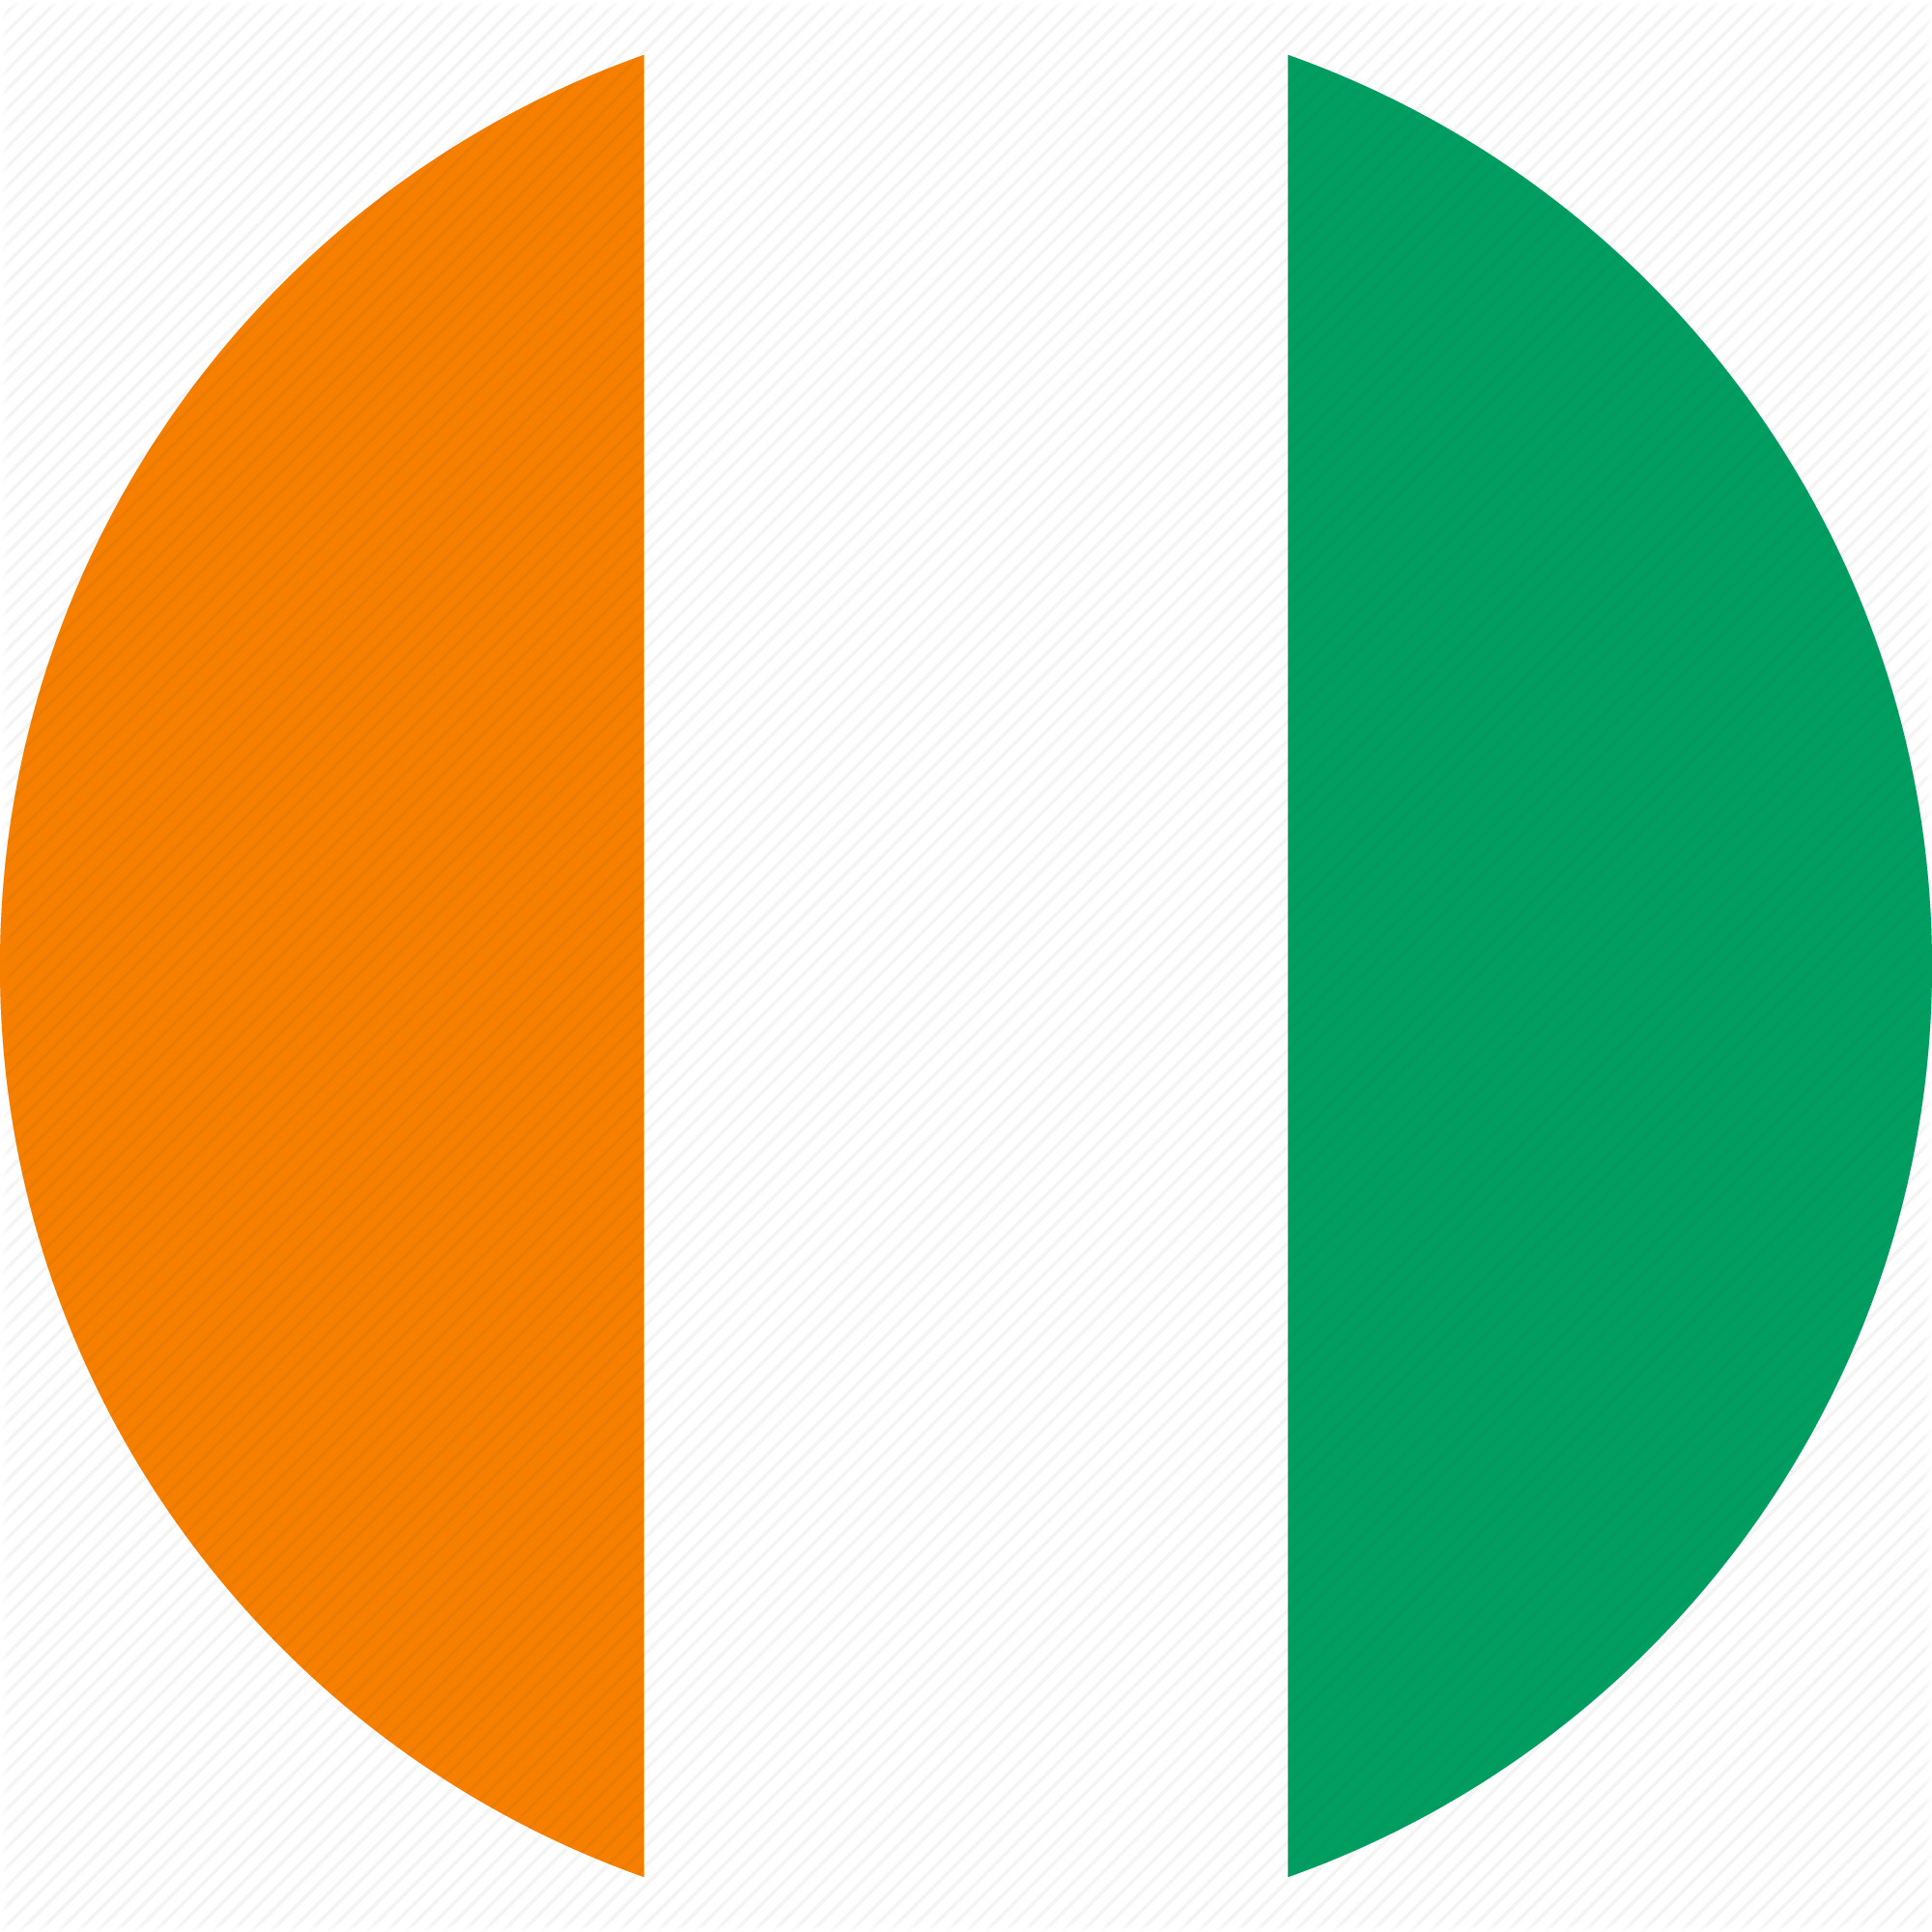 Ivory Coast Flag Background PNG Image